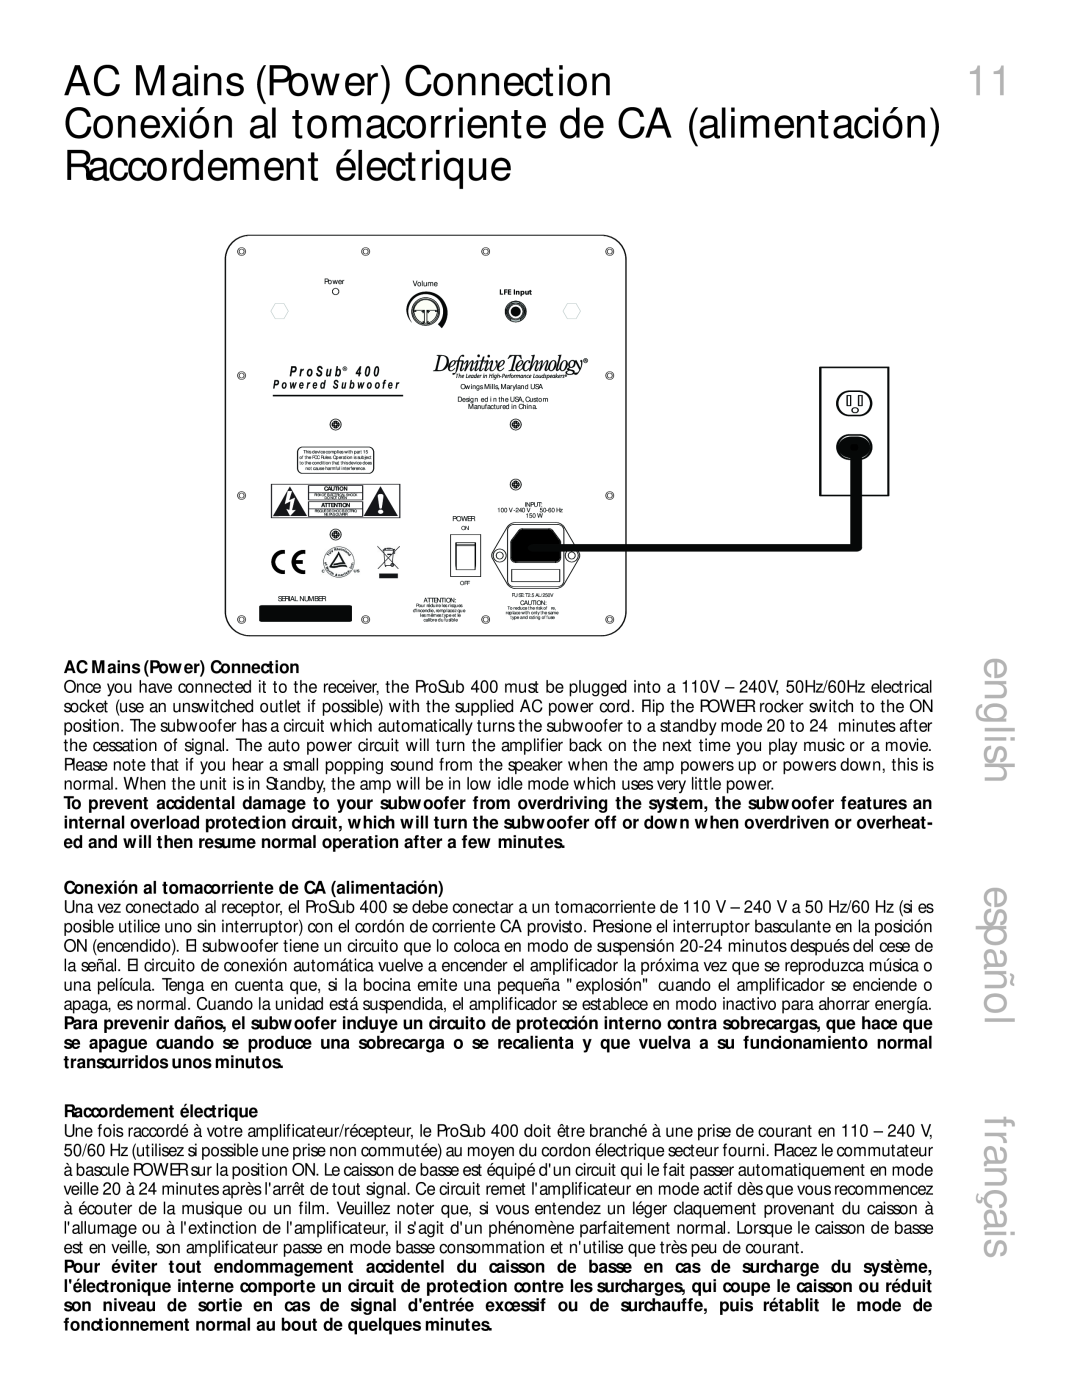 Definitive Technology 400 owner manual AC Mains Power Connection, english español français, Raccordement électrique 